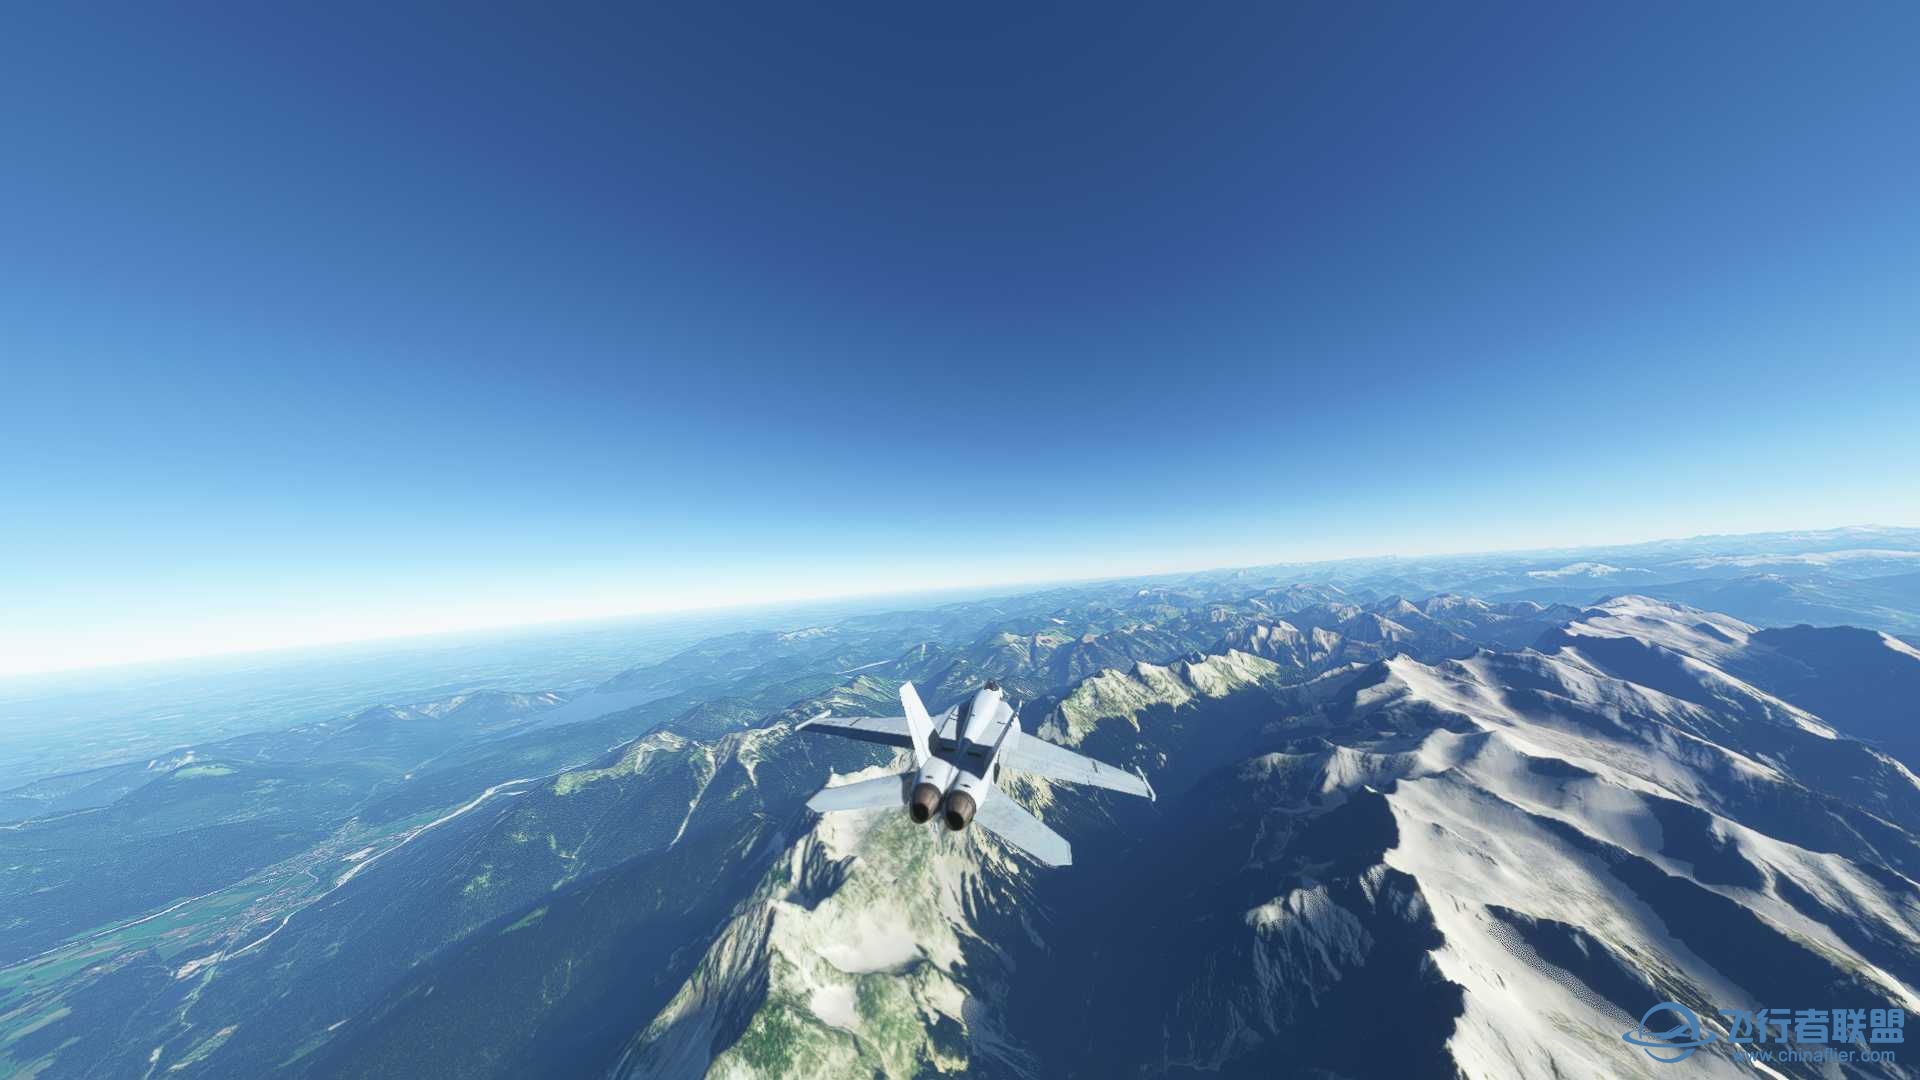 阿尔卑斯山脉附近飞行无法进行游戏-8834 